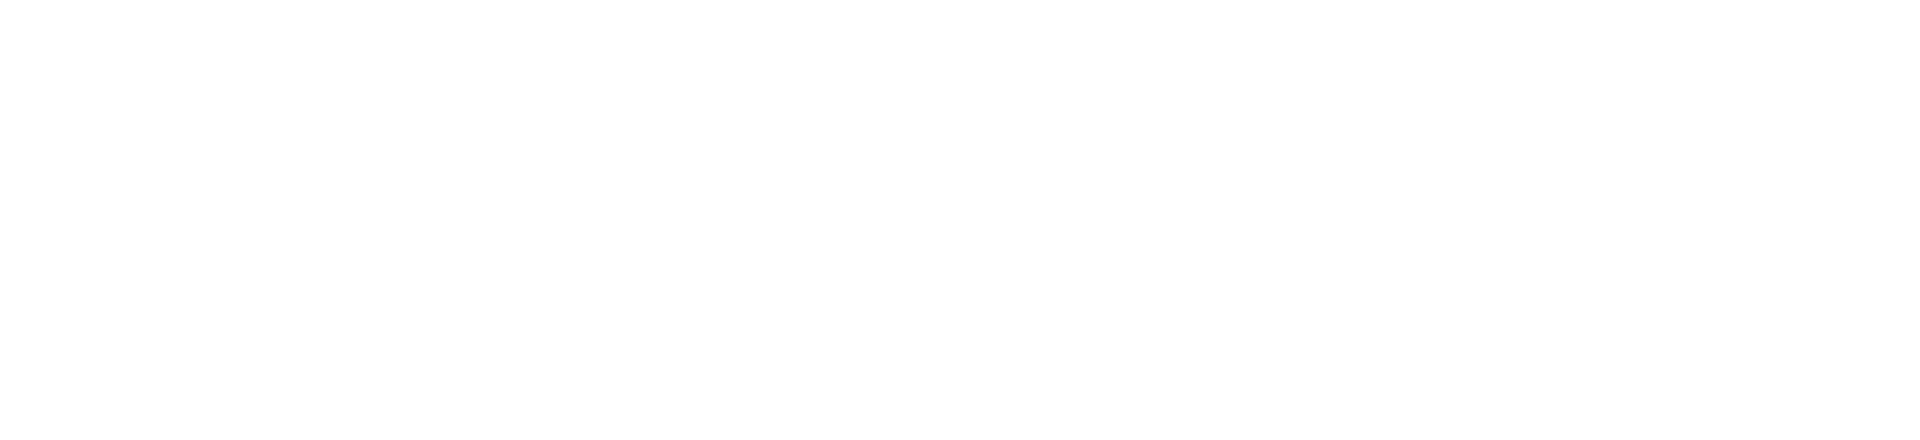 mep-fire-logo-01.jpg